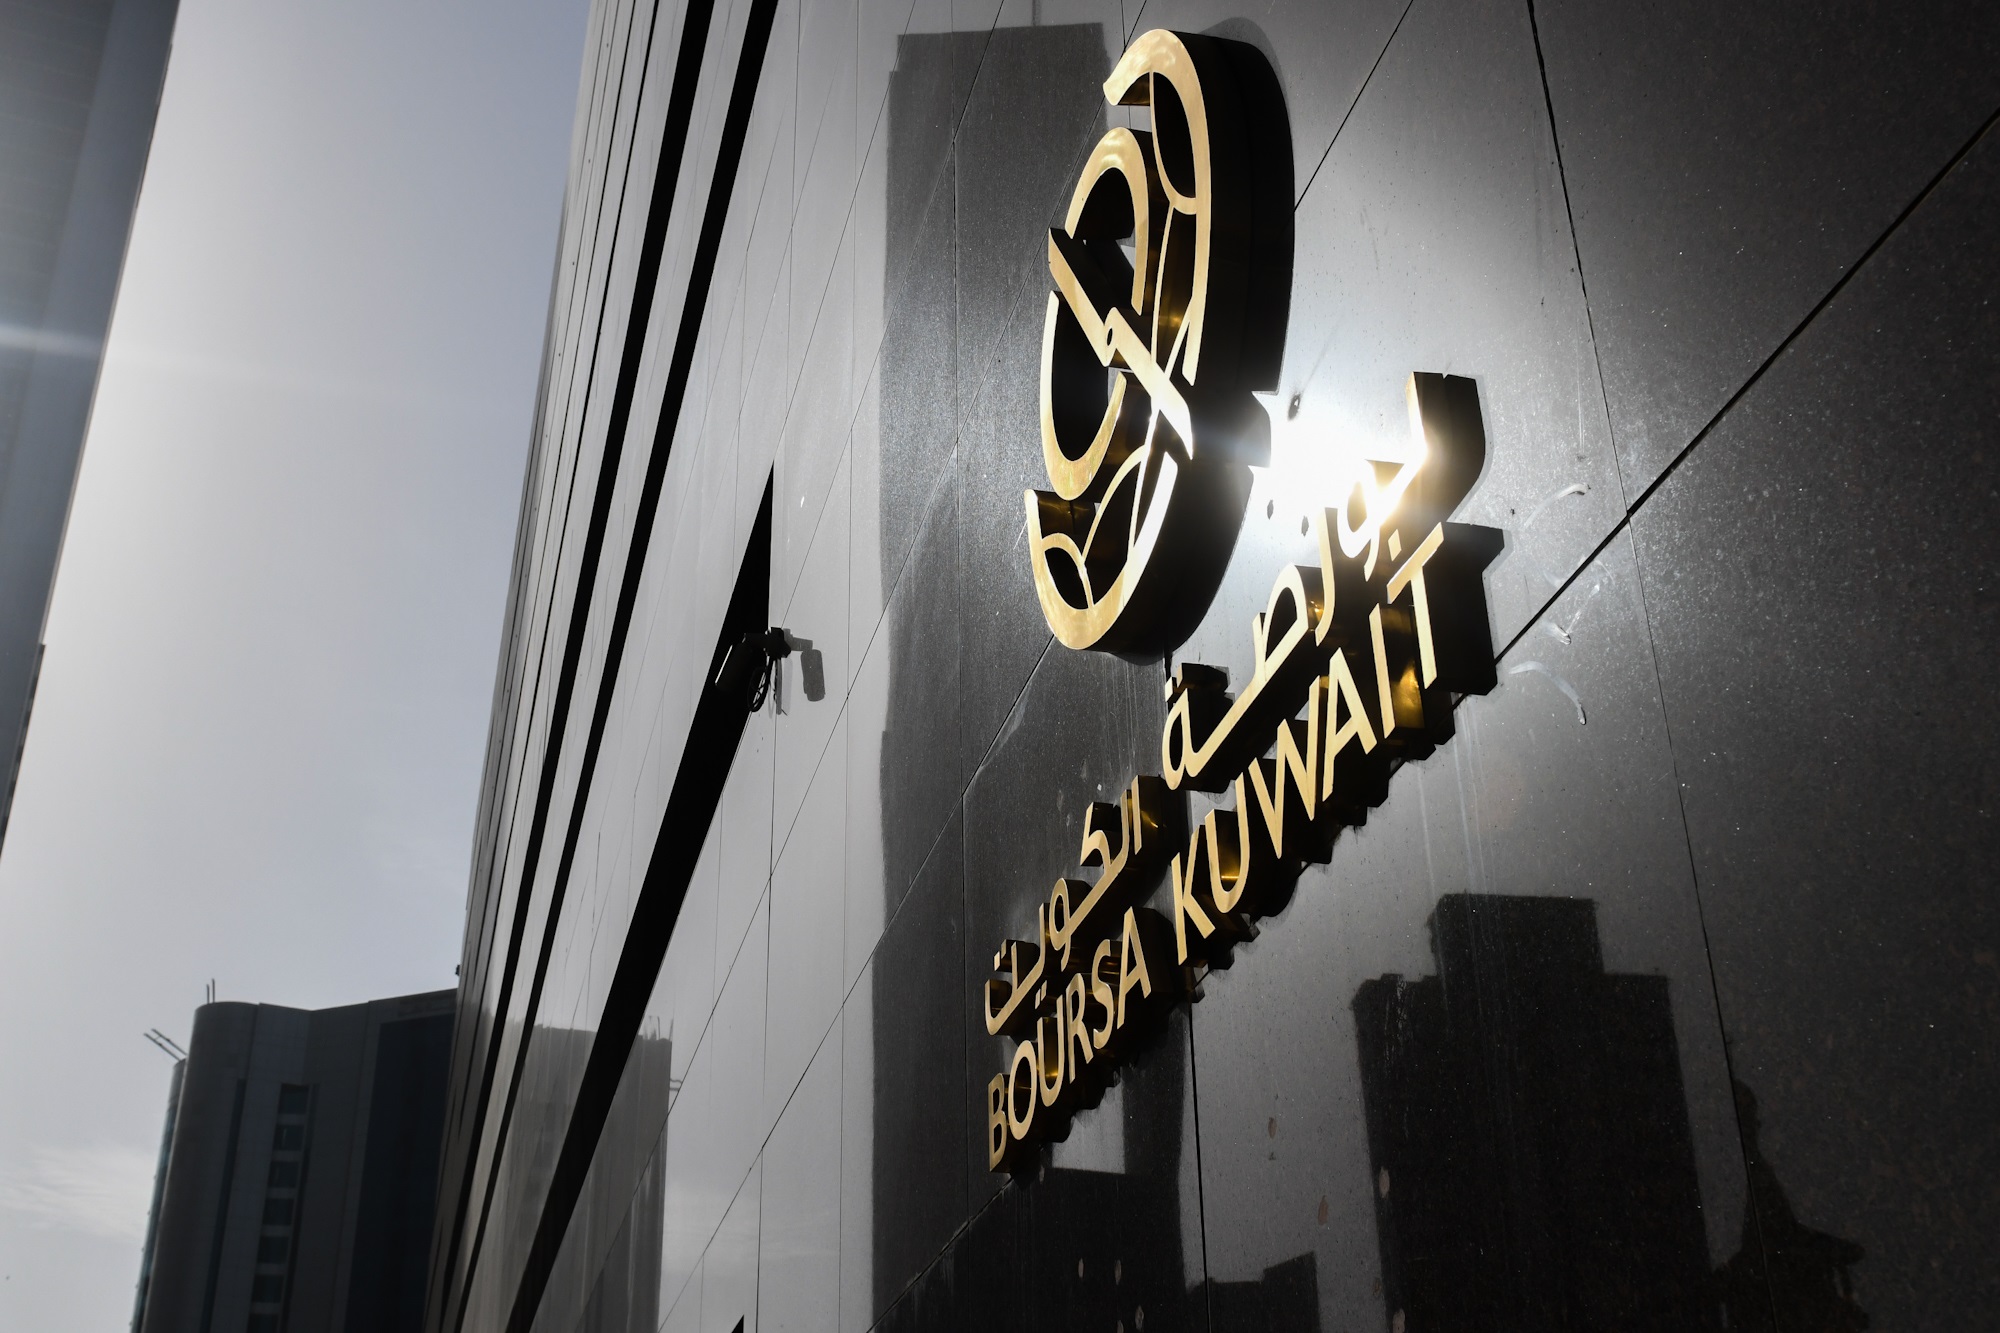 بورصة الكويت تغلق تعاملاتها على ارتفاع مؤشرها العام 8ر20 نقطة ليبلغ 36ر7496 بنسبة 28ر0 في المئة